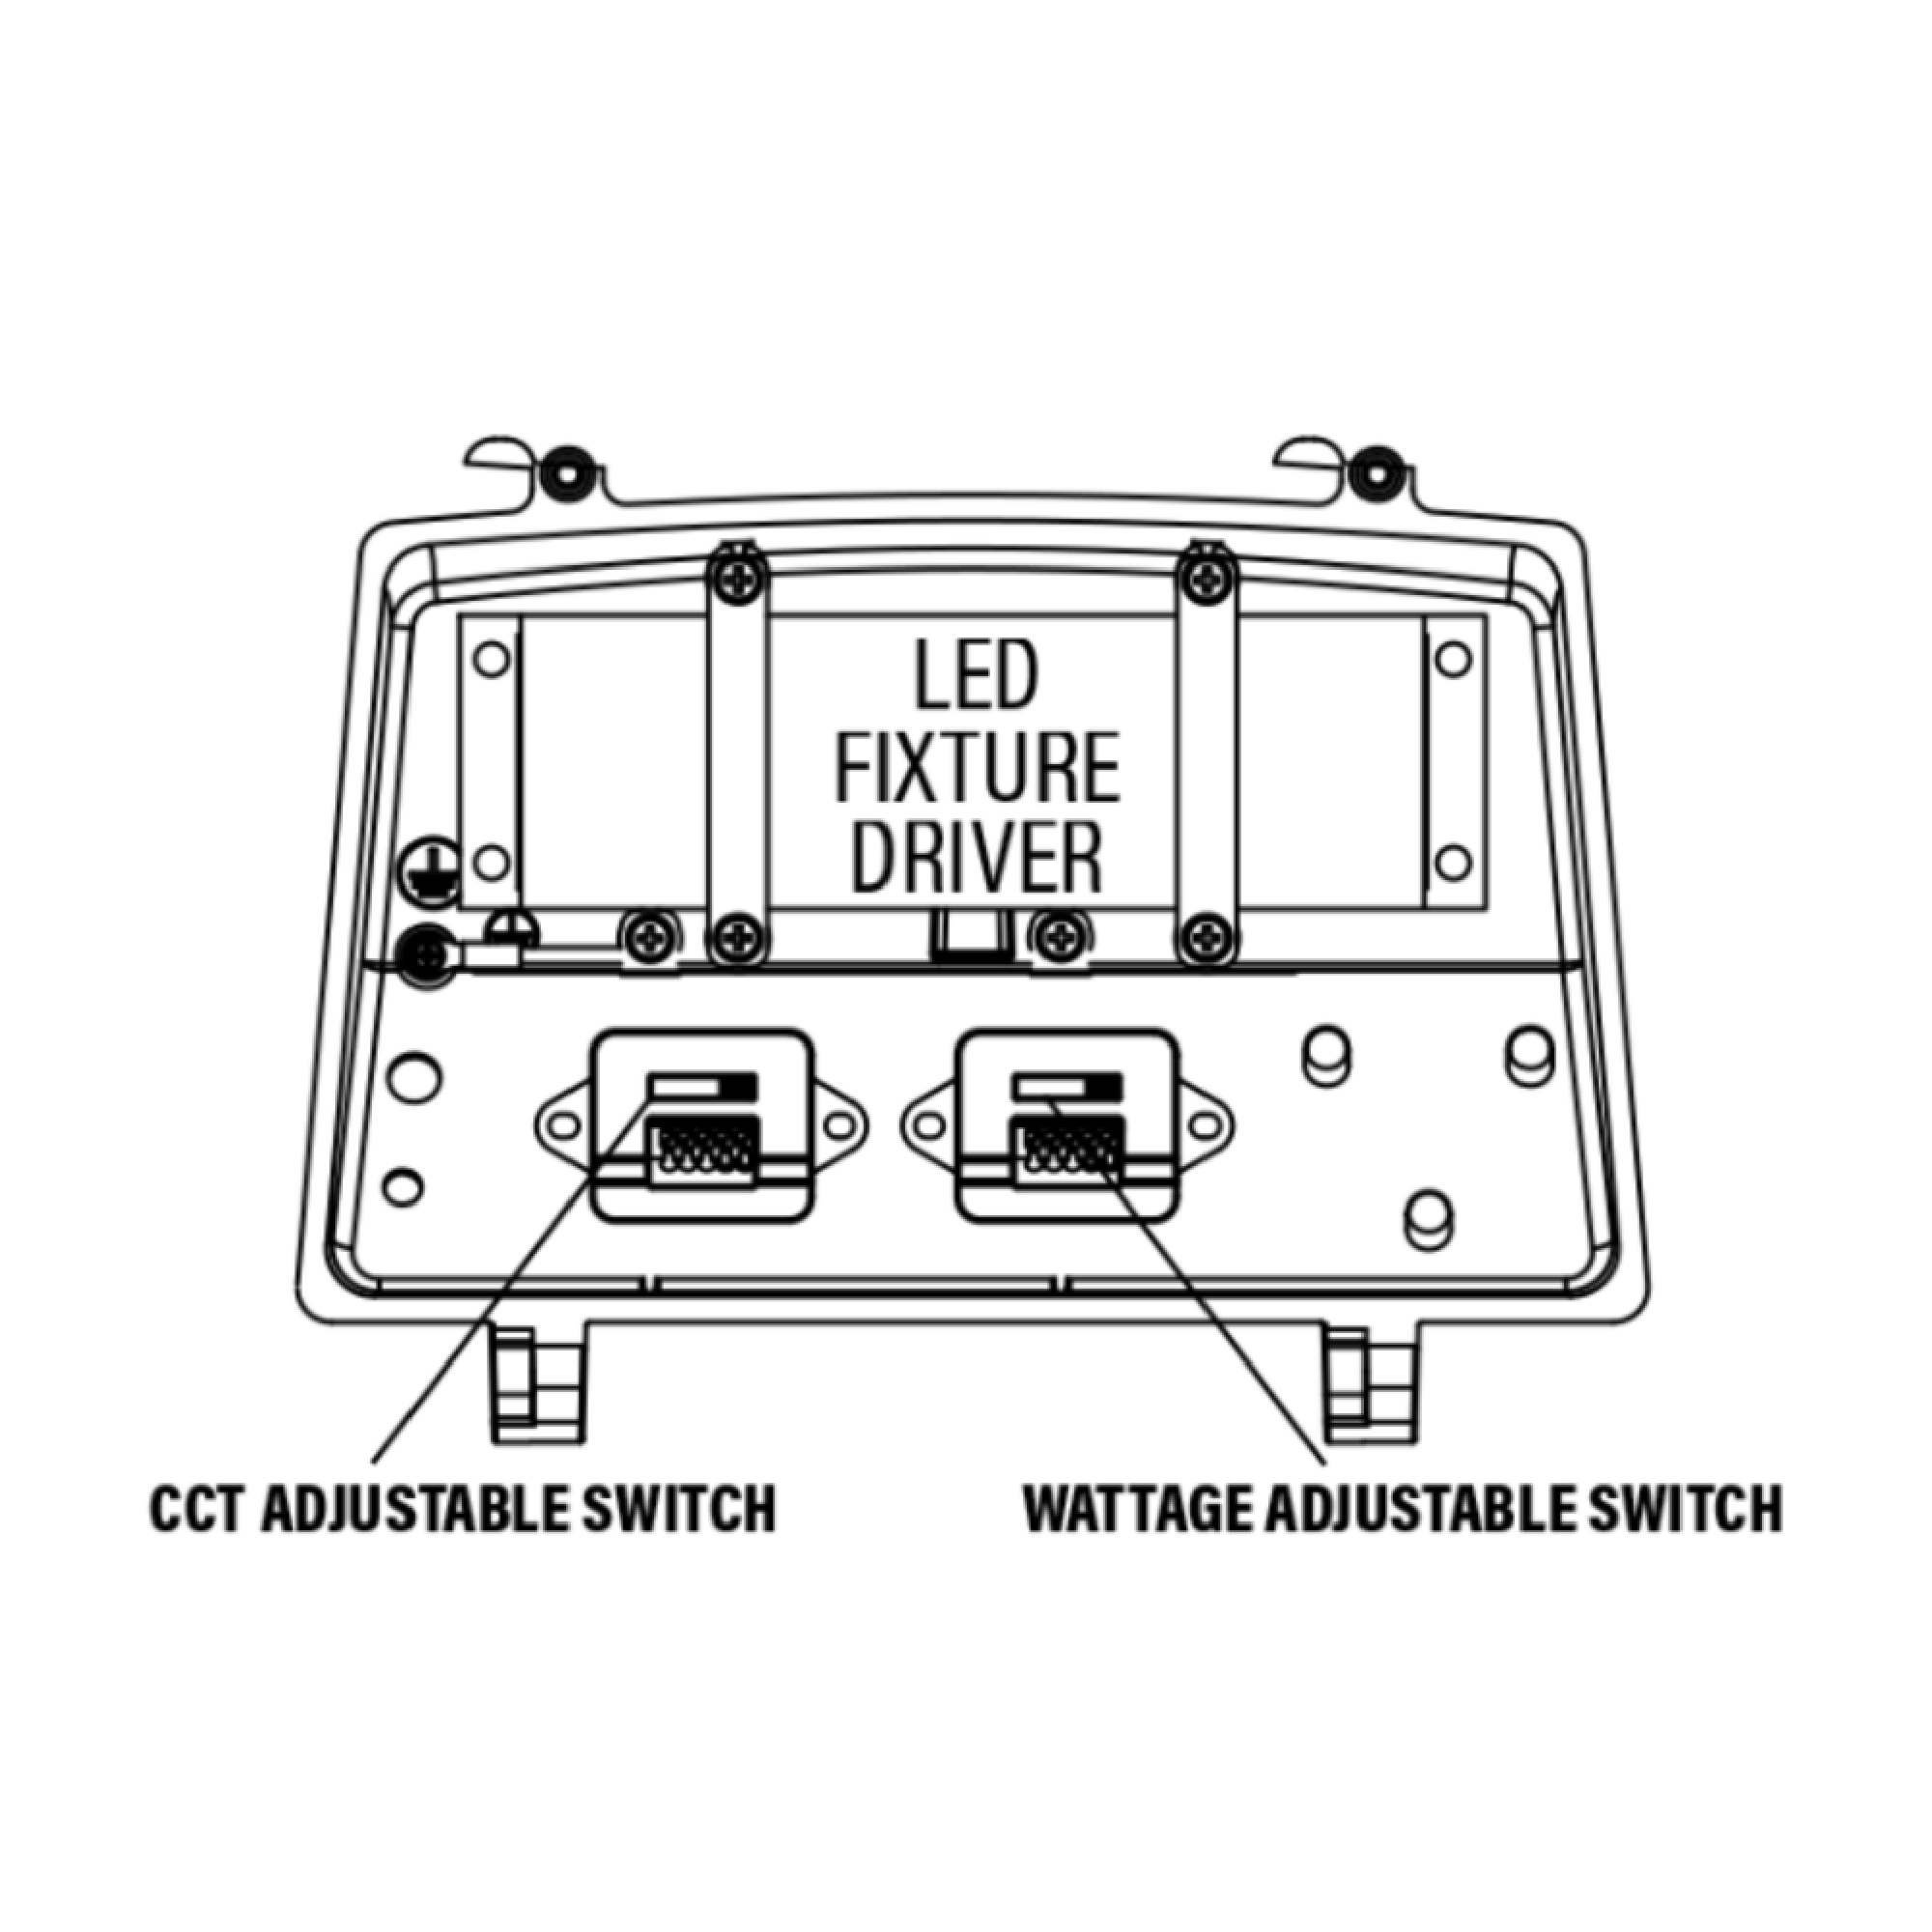 LED Cutoff Wall Pack, 20W/30W/45W/50W, Selectable Wattage & CCT, 6300 Lumens